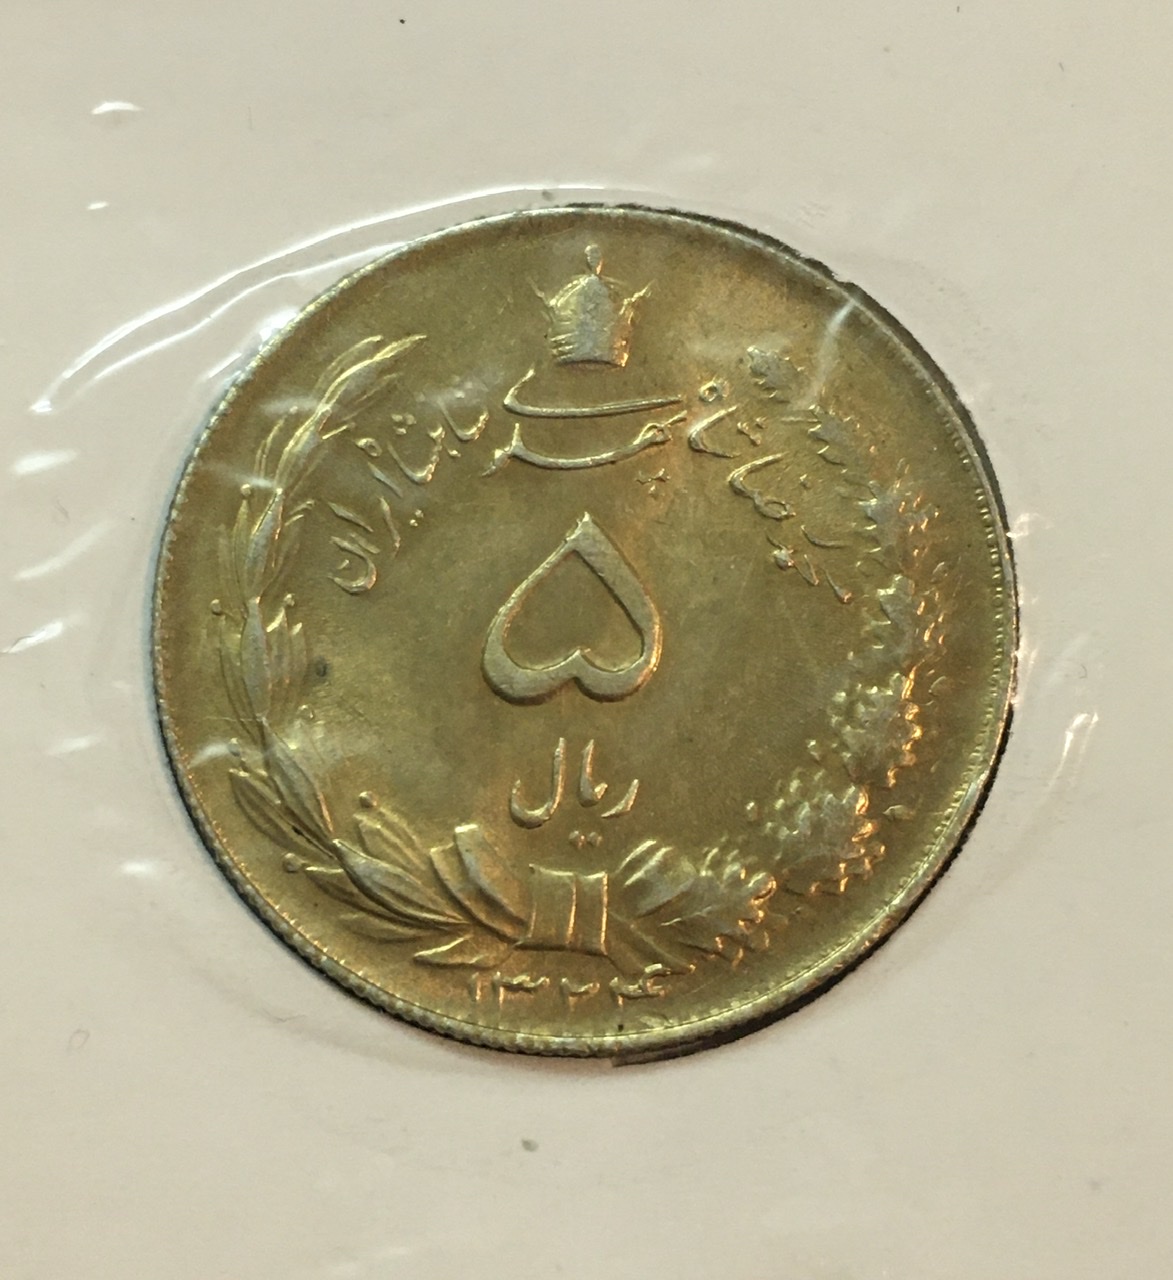 سکه نقره ۵ ریال پهلوی